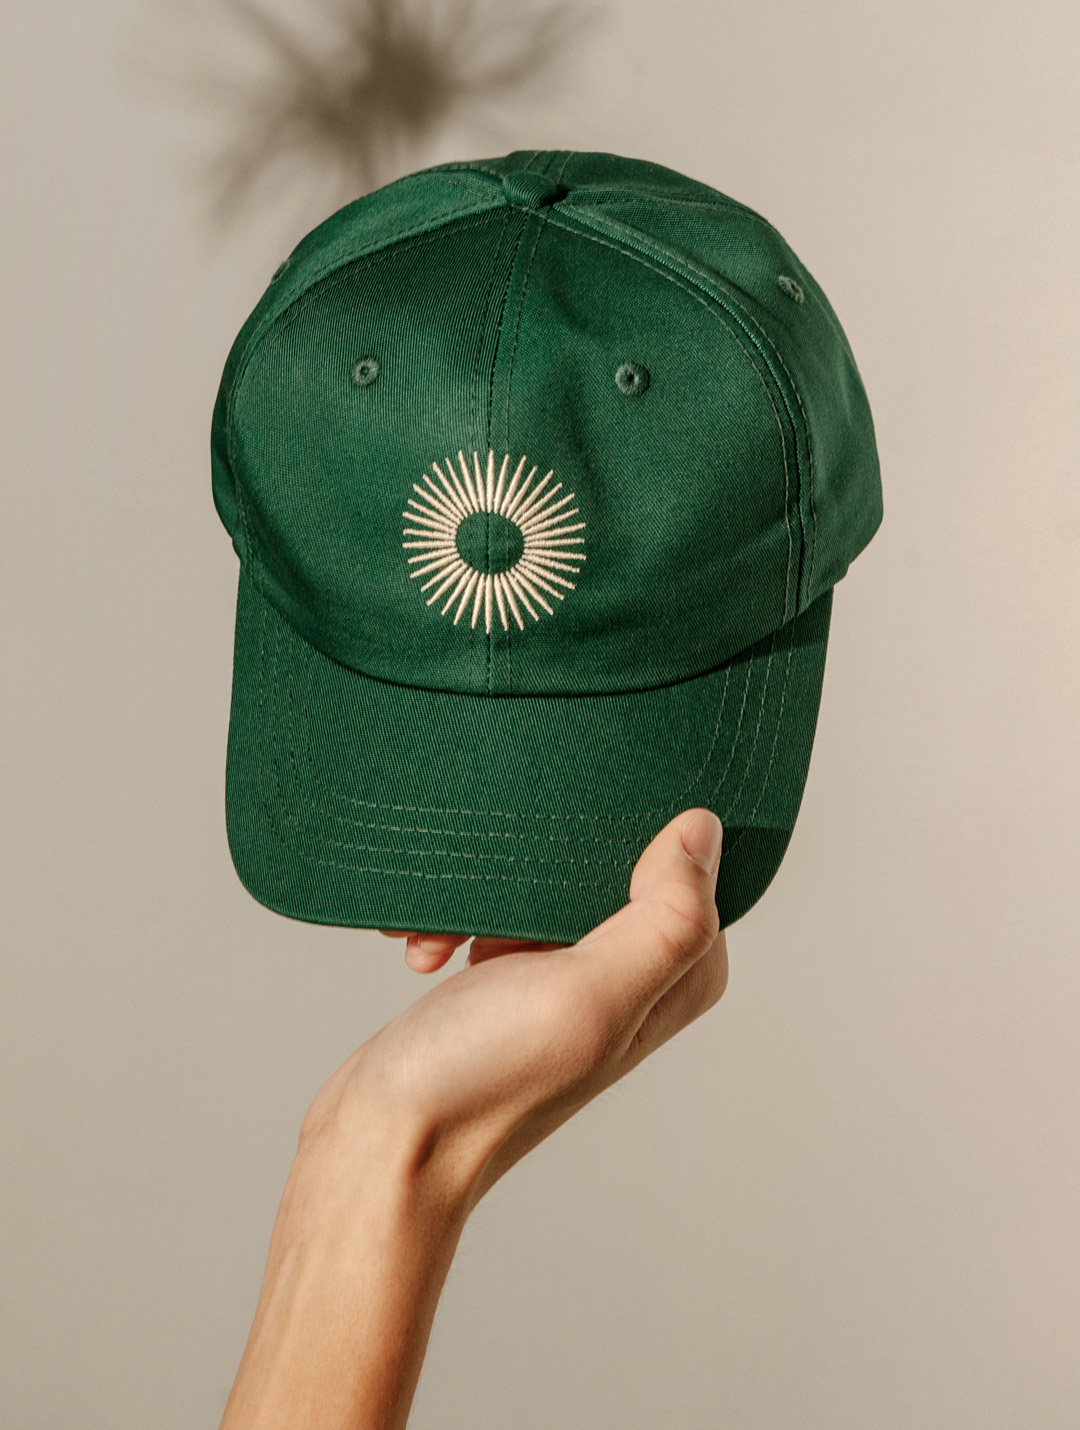 green ball cap with sun logo